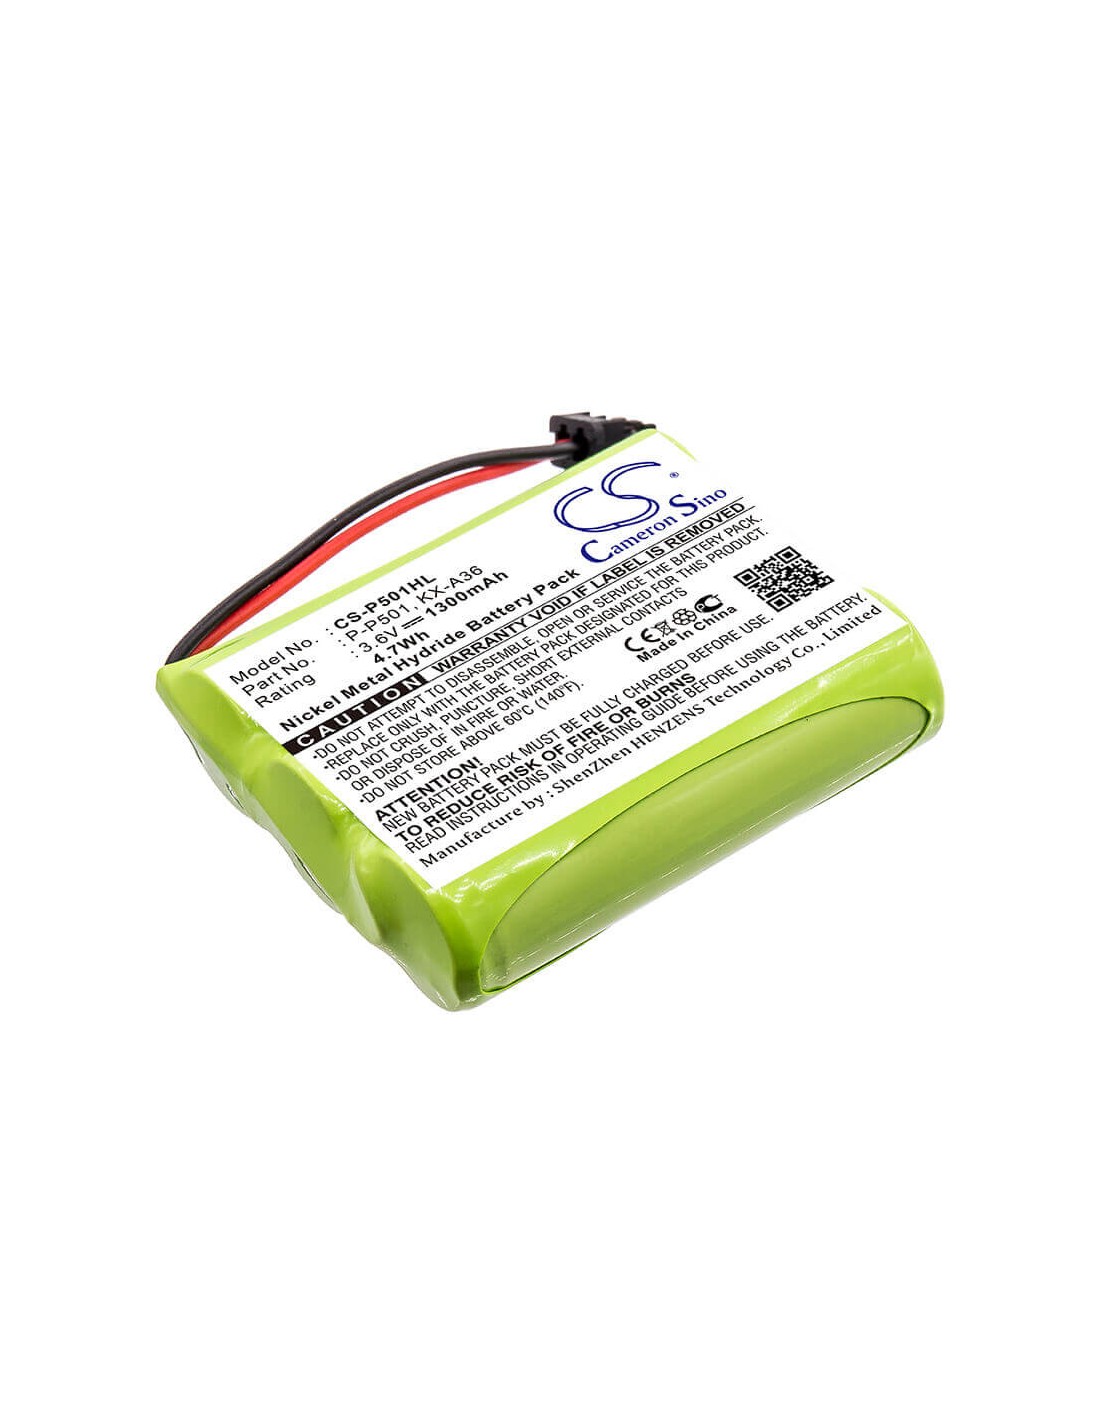 Battery for Memorex, Ybt3n800mah 3.6V, 1300mAh - 4.68Wh